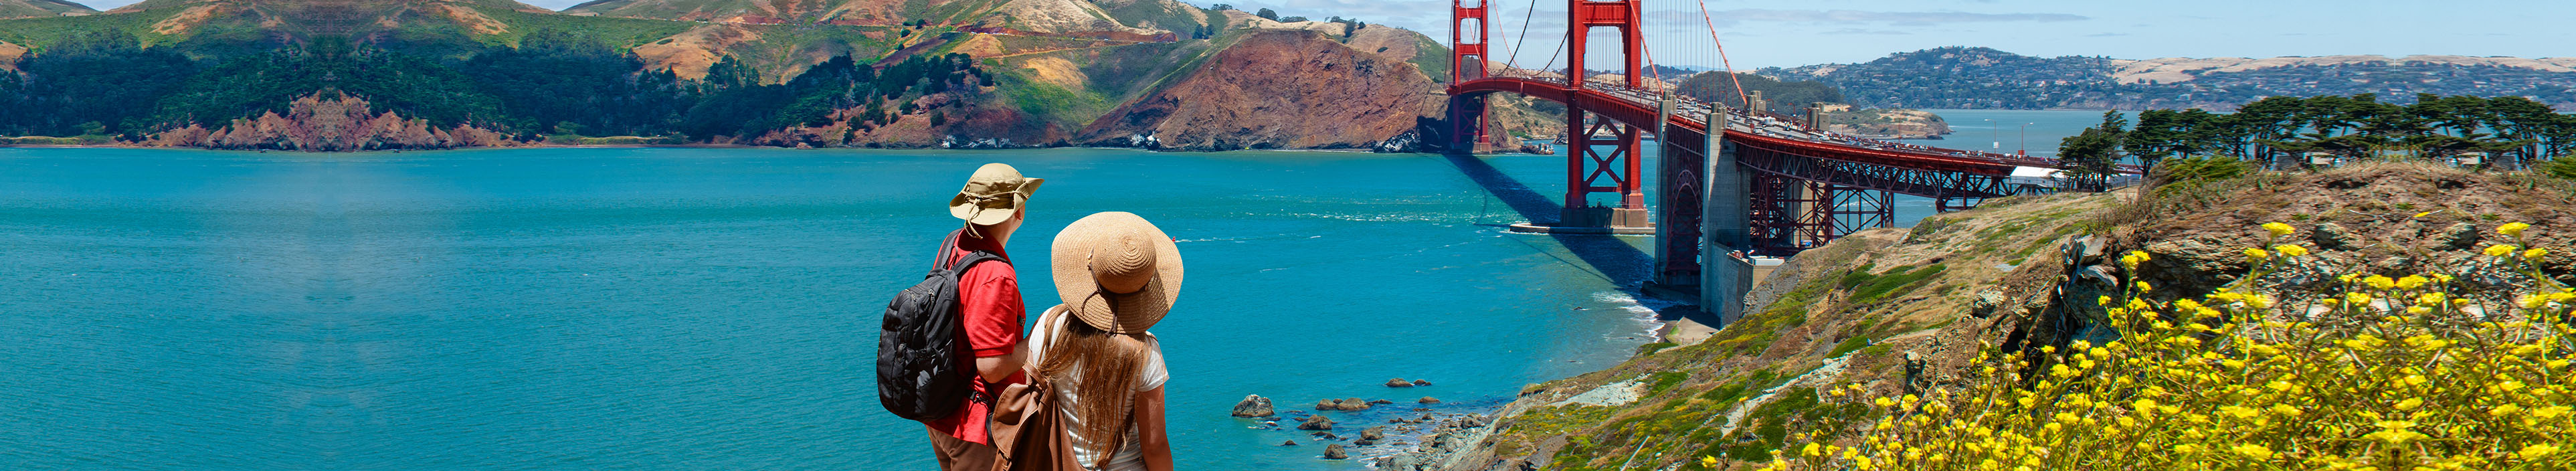 Freunde stehen auf dem Berg und blicken auf die Golden Gate Bridge, über dem Pazifischen Ozean und der Bucht von San Francisco